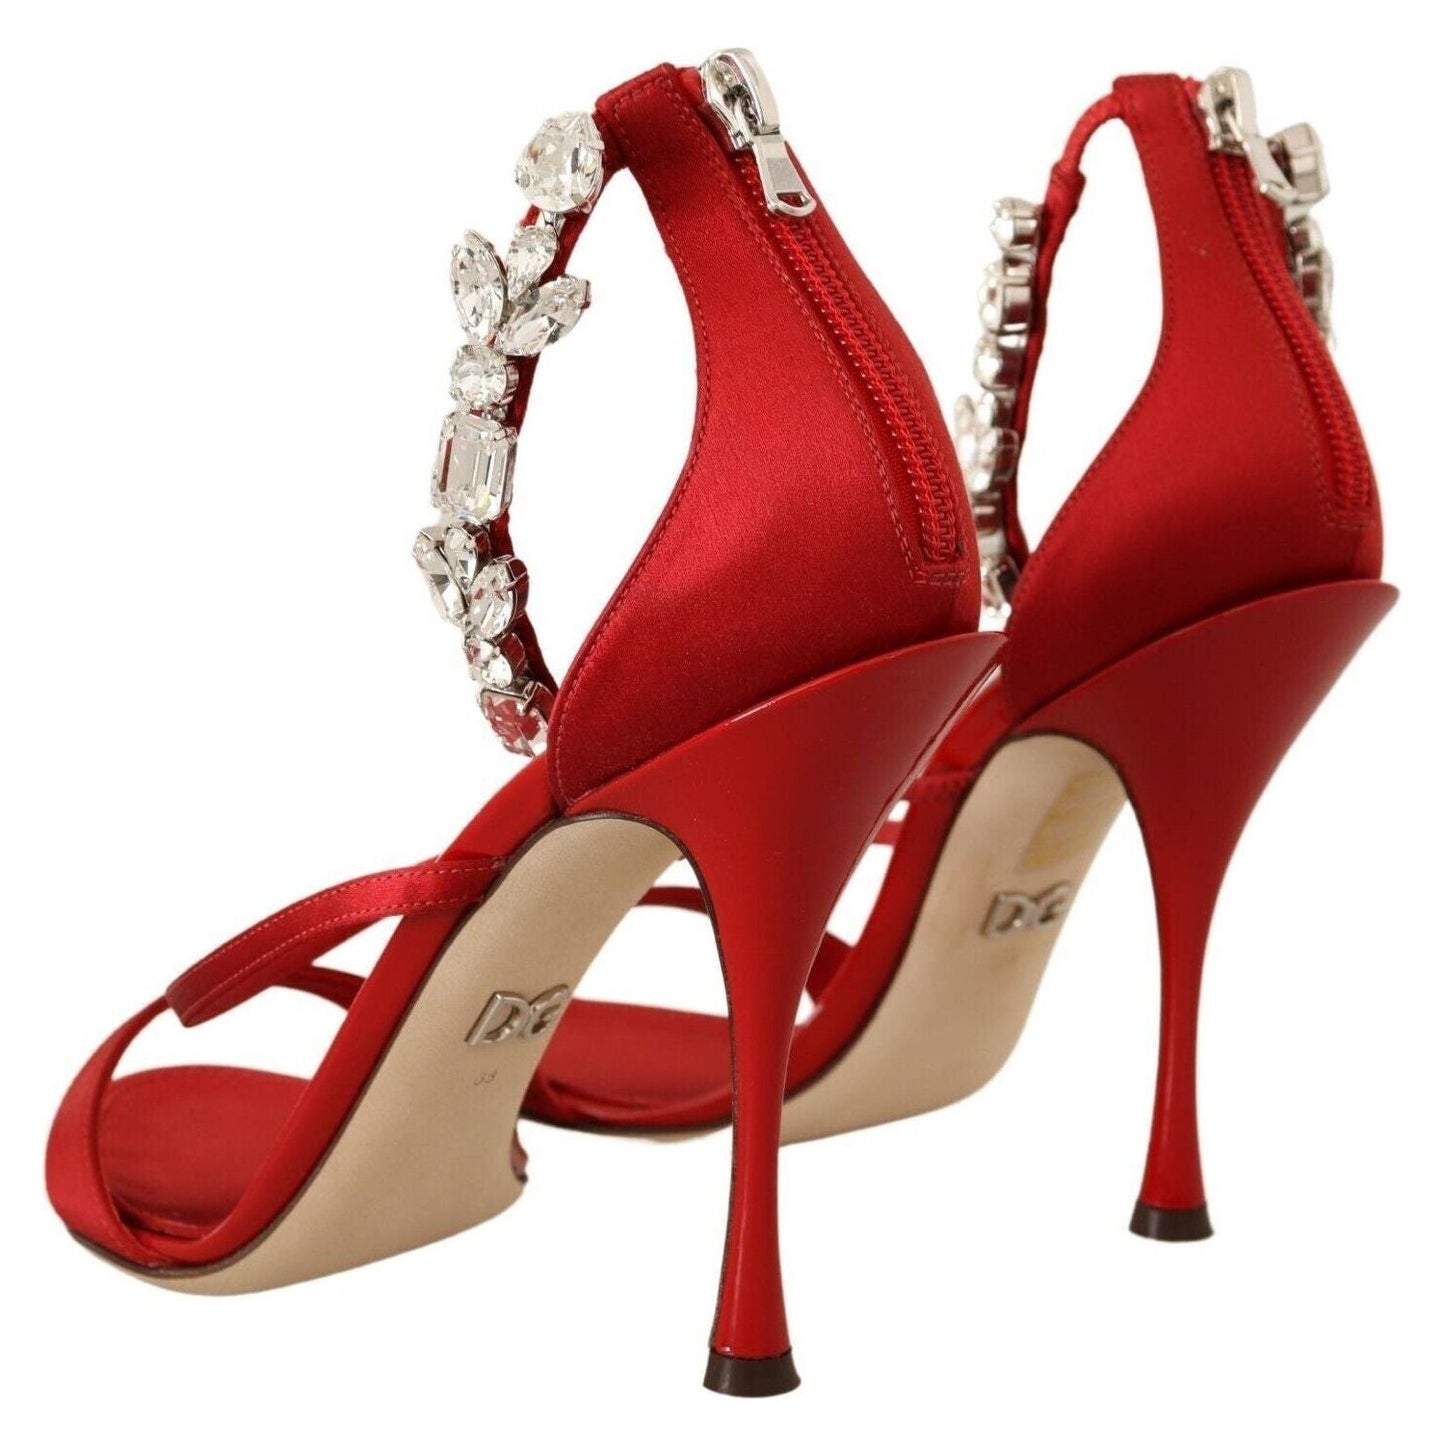 Dolce & Gabbana Red Crystal-Embellished Heel Sandals red-satin-crystals-sandals-keira-heels-shoes Heeled Sandals s-l1600-2022-11-15T152018.279-2ef533c2-f8a.jpg